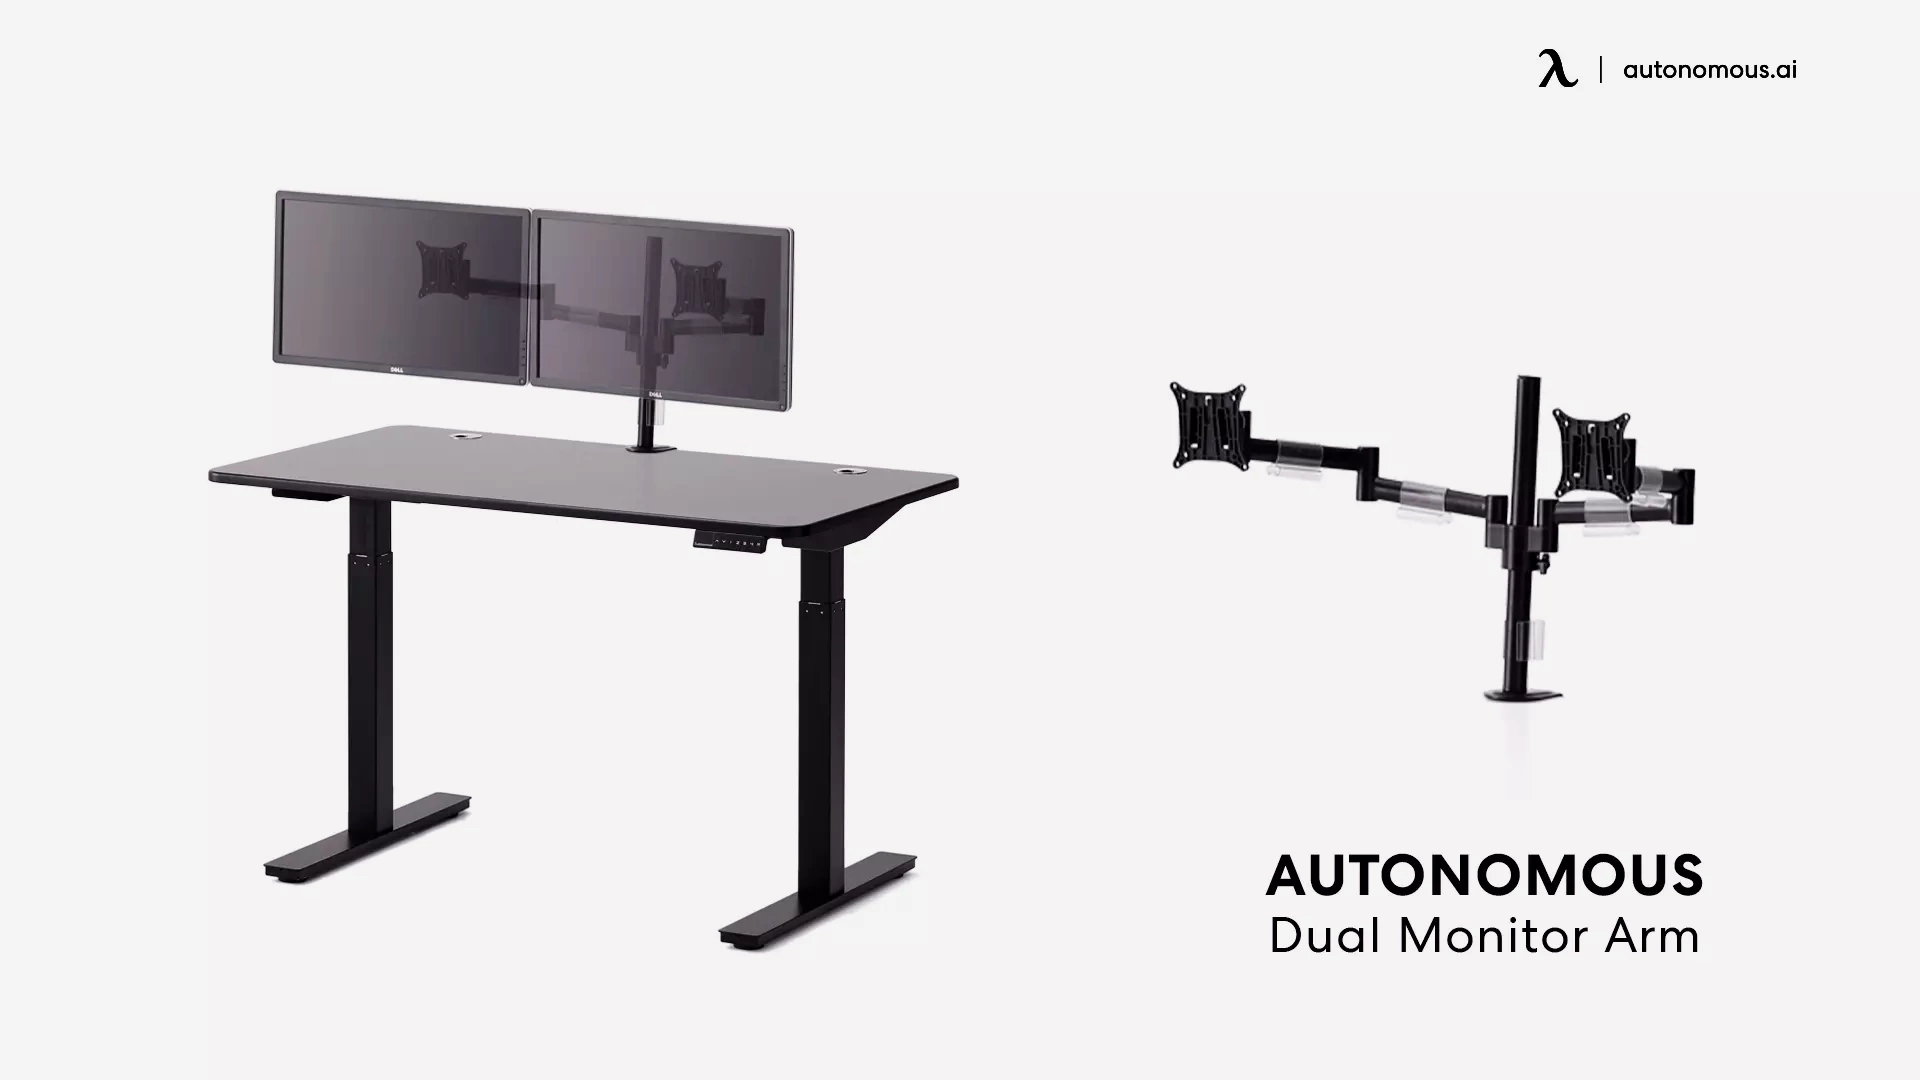 Dual Monitor Arm by Autonomous